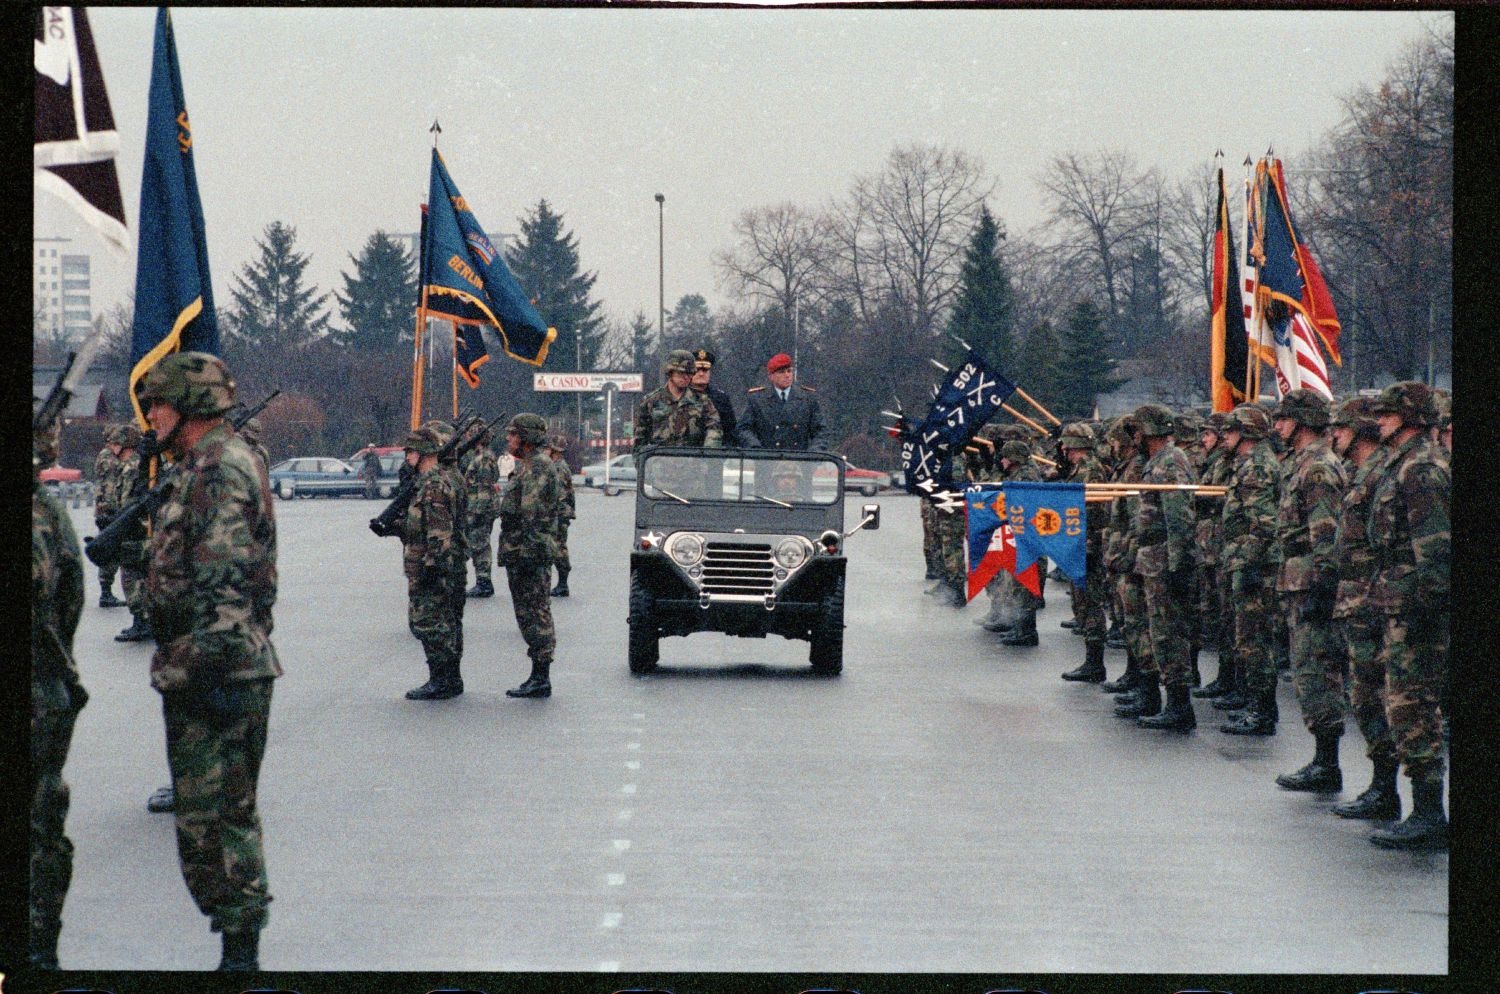 Fotografie: Verleihung des Fahnenbandes der Bundesrepublik Deutschland an Einheiten der U.S. Army Berlin in Berlin-Lichterfelde (AlliiertenMuseum/U.S. Army Photograph Public Domain Mark)